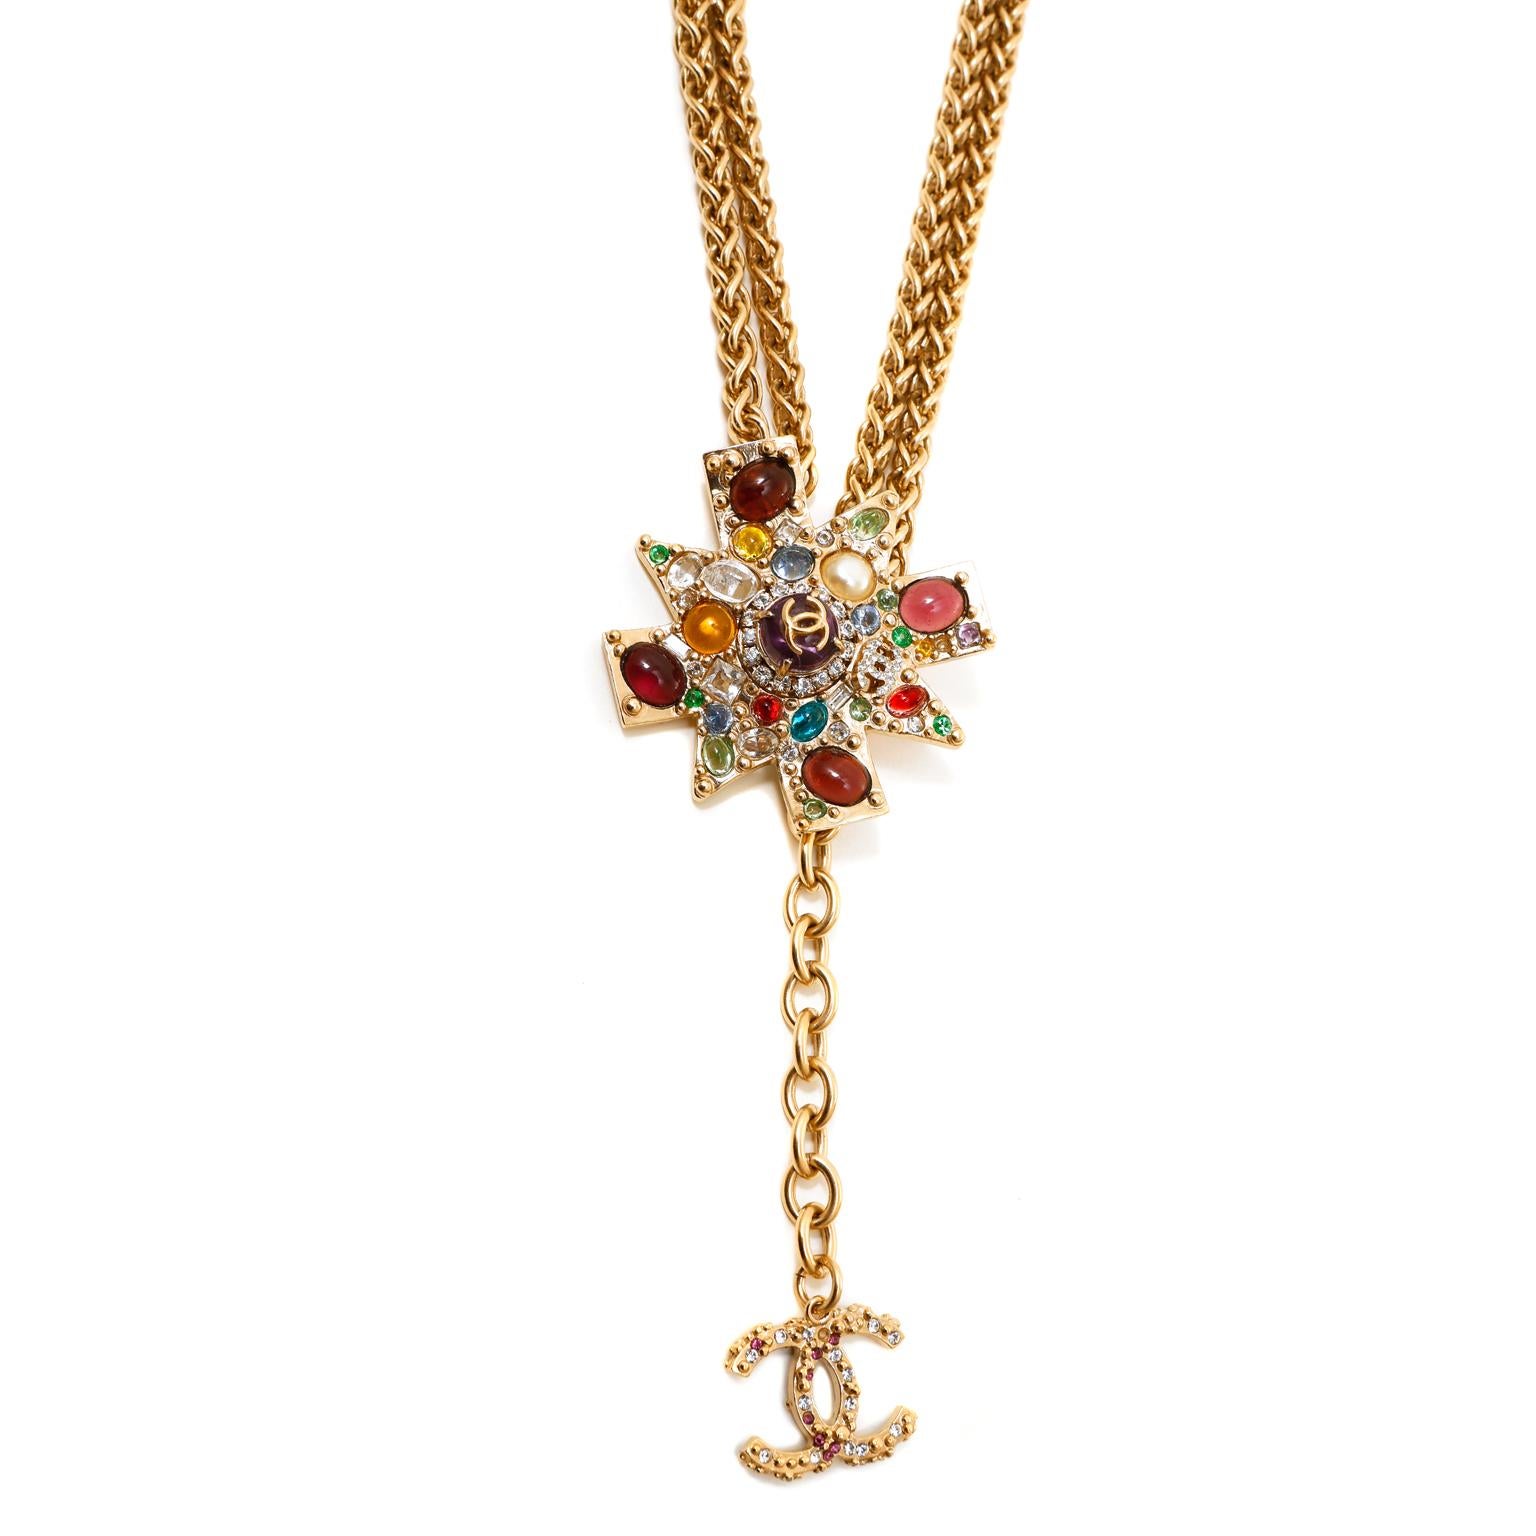 Cet authentique collier étoile byzantine Gripoix de Chanel est en excellent état vintage.  L'étoile de forme irrégulière en plaqué or 14 carats est recouverte de bijoux en verre Gripoix multicolores. Il est suspendu à une double chaîne en or avec